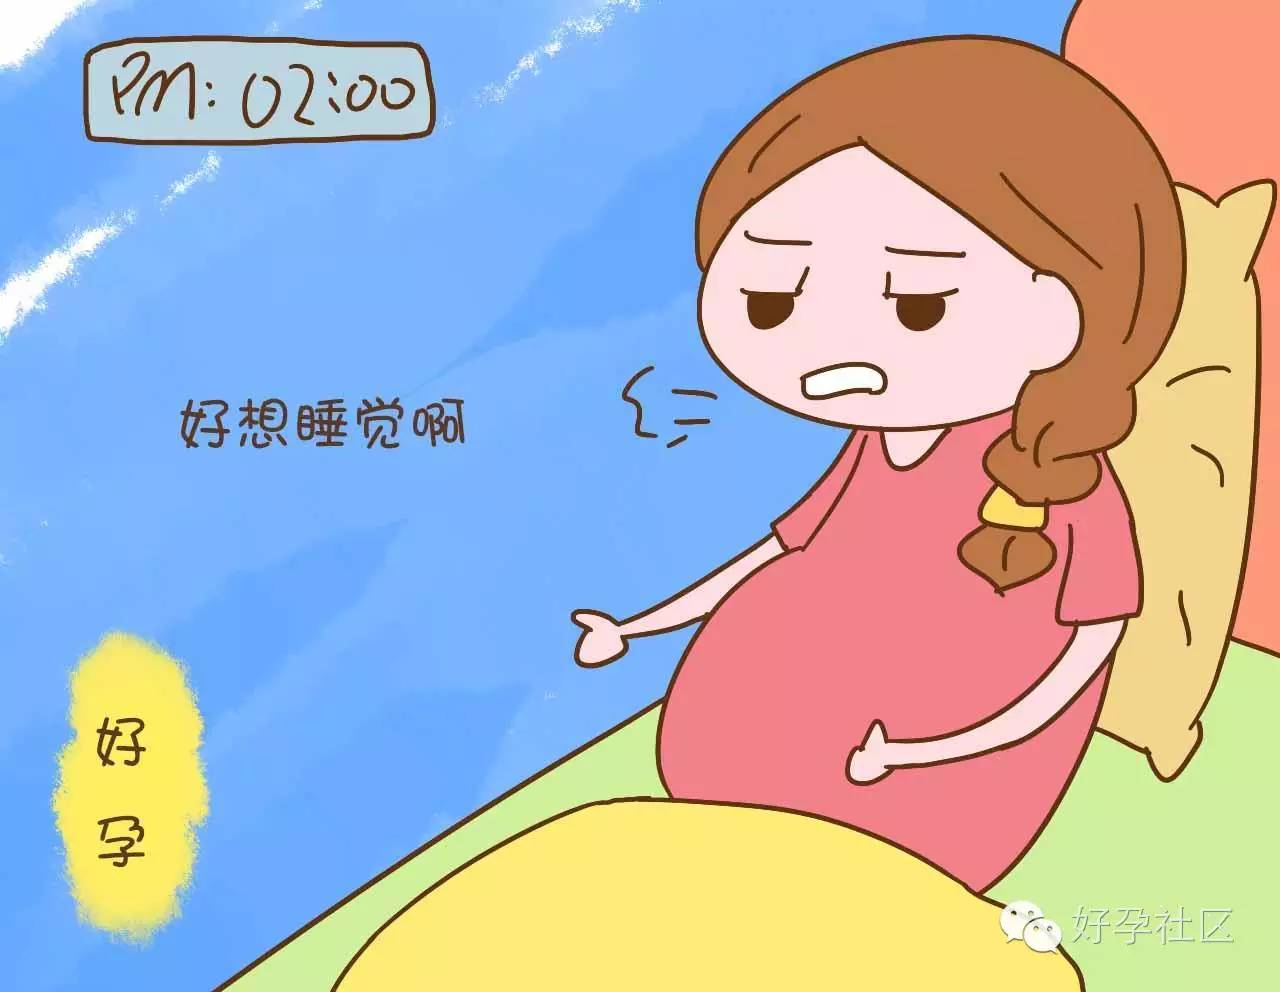 怀孕越来越累图片,孕妇睡觉难受图片卡通 - 伤感说说吧